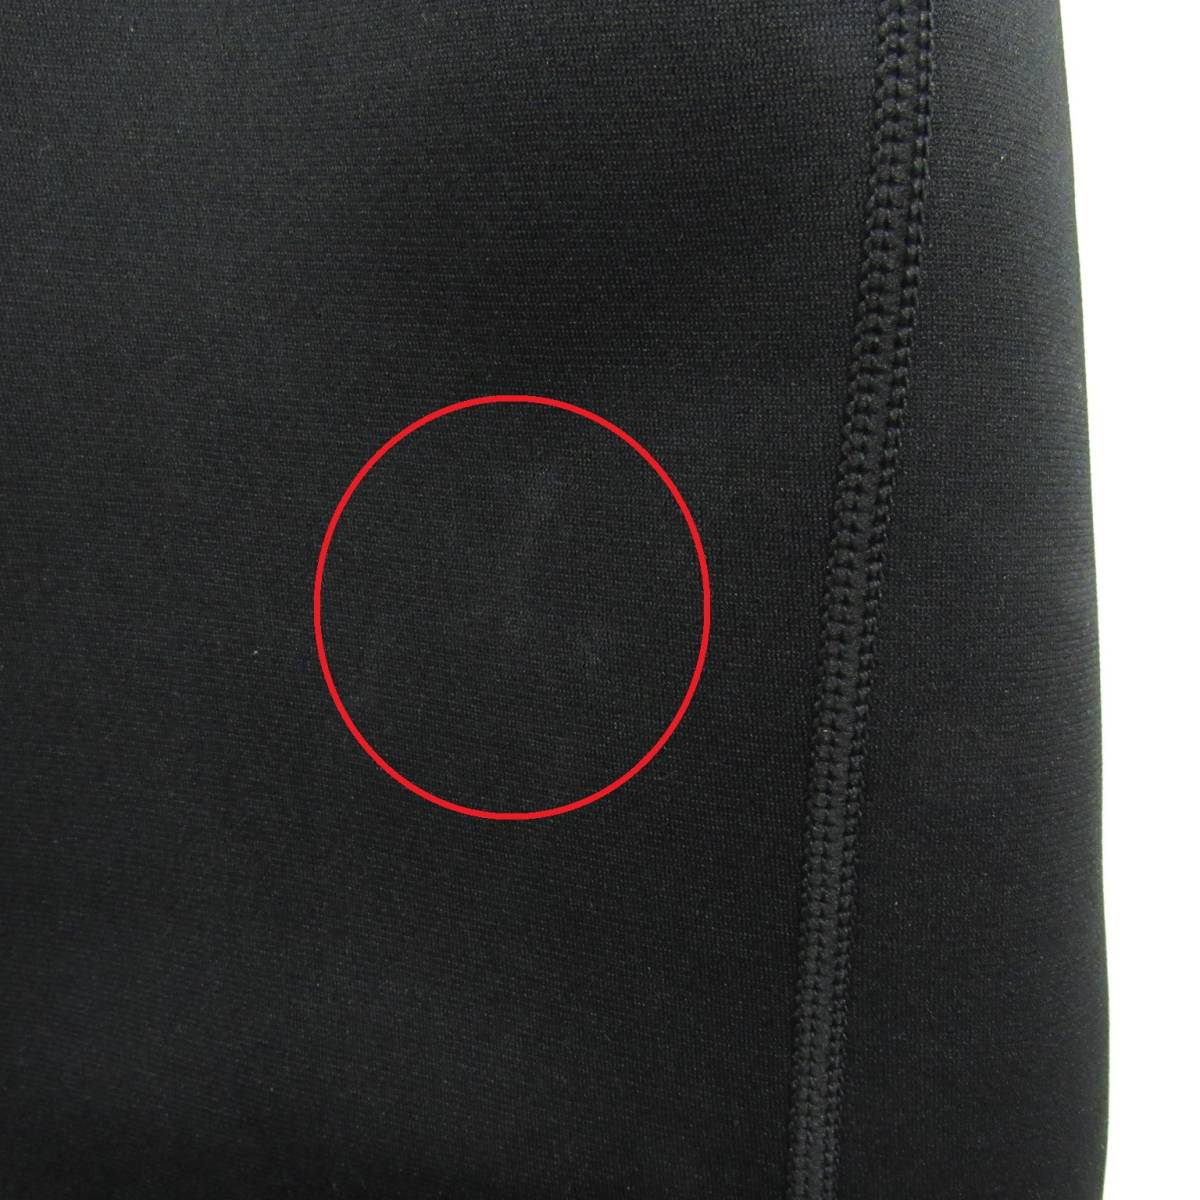 87-00299 [ б/у товар ] sawaiko костюм-сауна спорт одежда departure пот теплоизоляция фитнес тренировка мужчина 3XL черный 